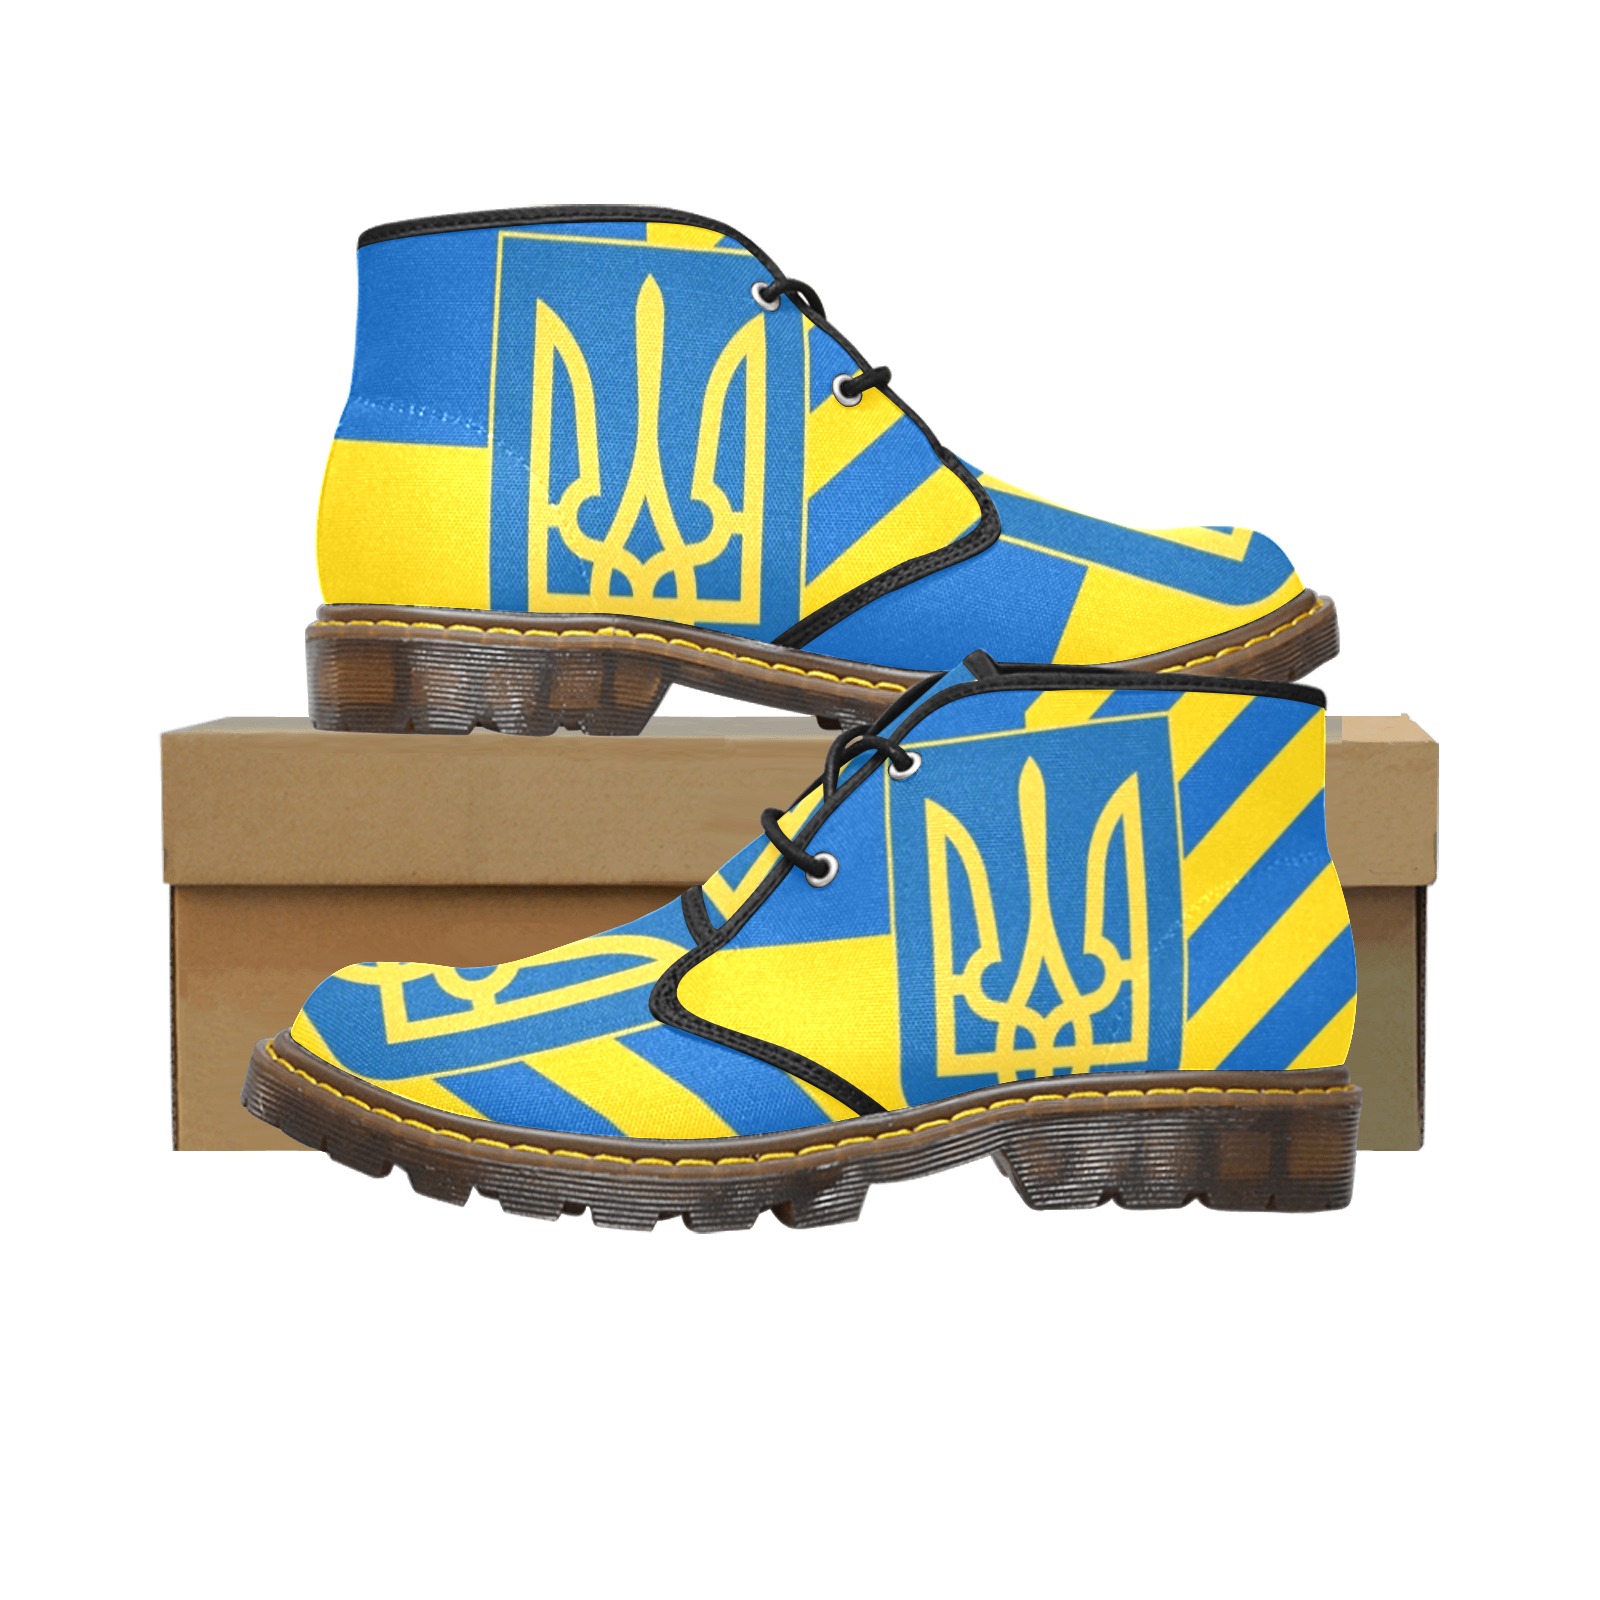 UKRAINE Women's Canvas Chukka Boots (Model 2402-1)